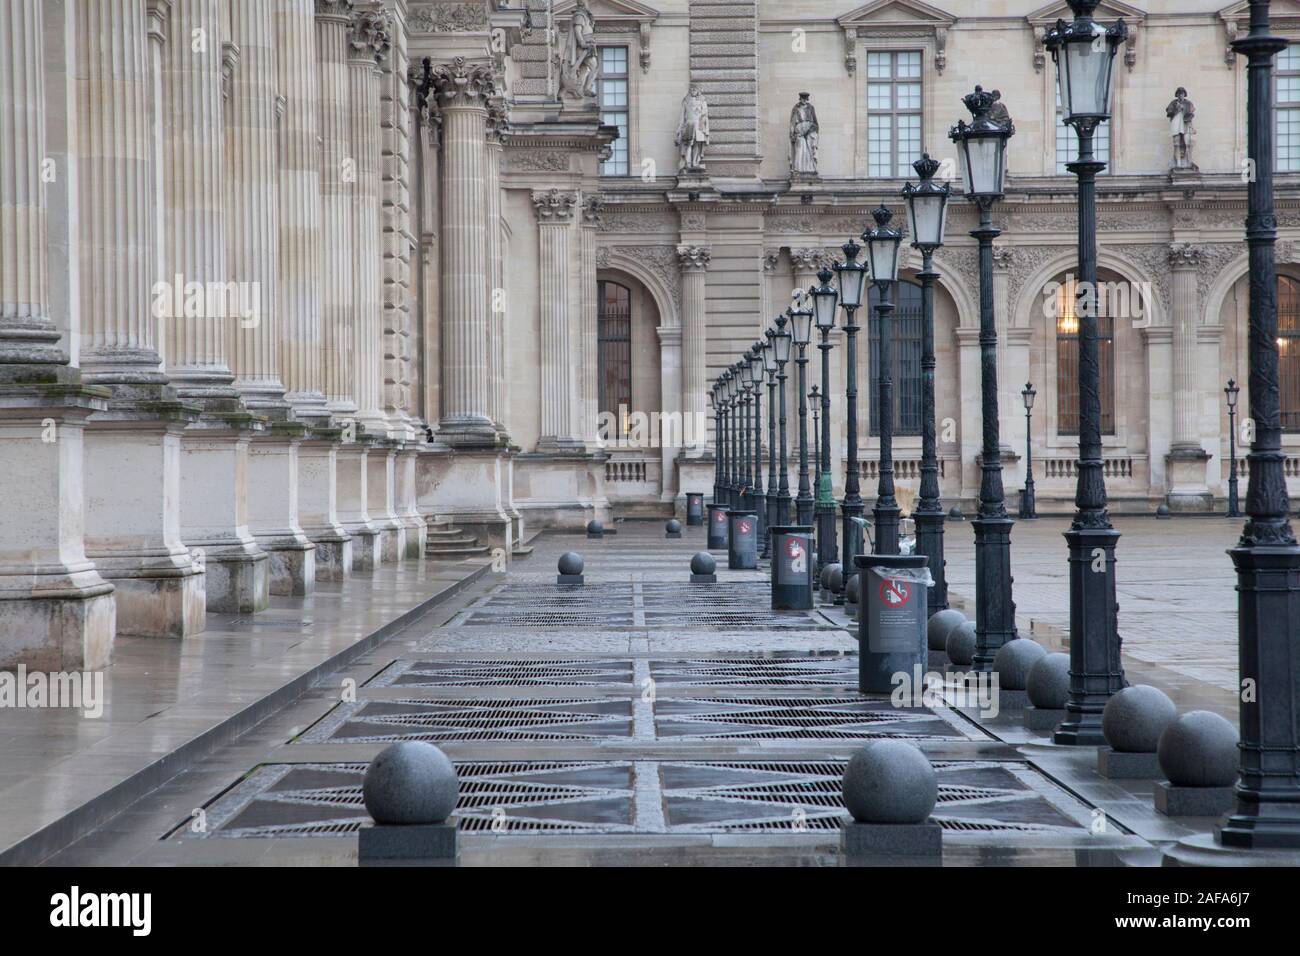 Detalle arquitectónico de la Cour Carrée (Tribunal cuadrado) del Palais du Louvre en París en una húmeda mañana de invierno Foto de stock